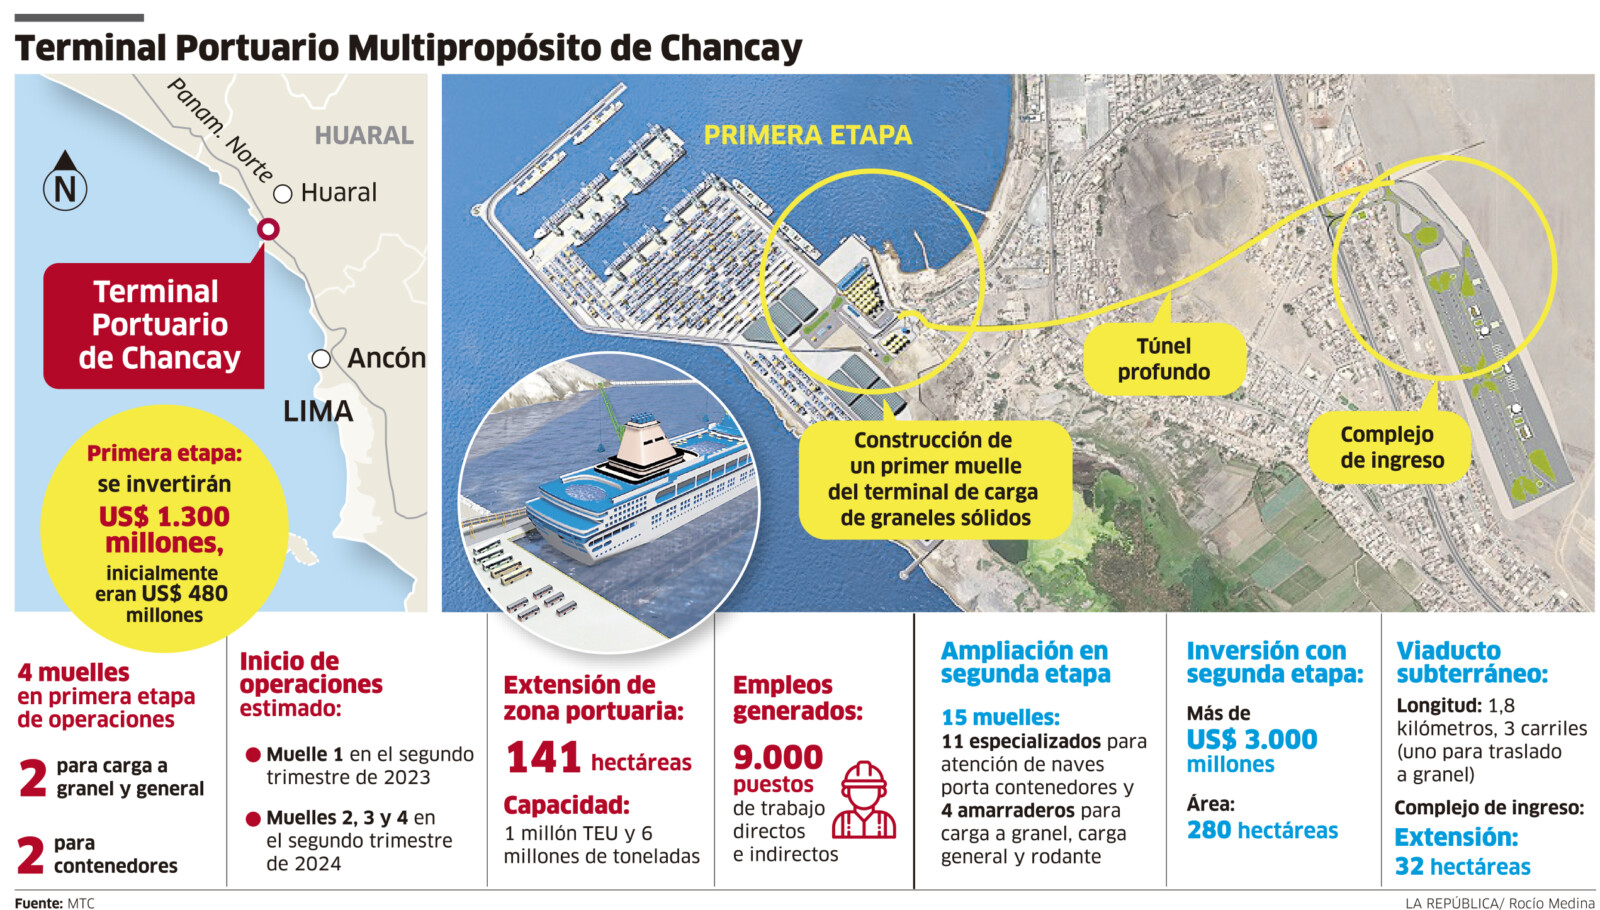 Terminal Portuario Multipropósito de Chancay